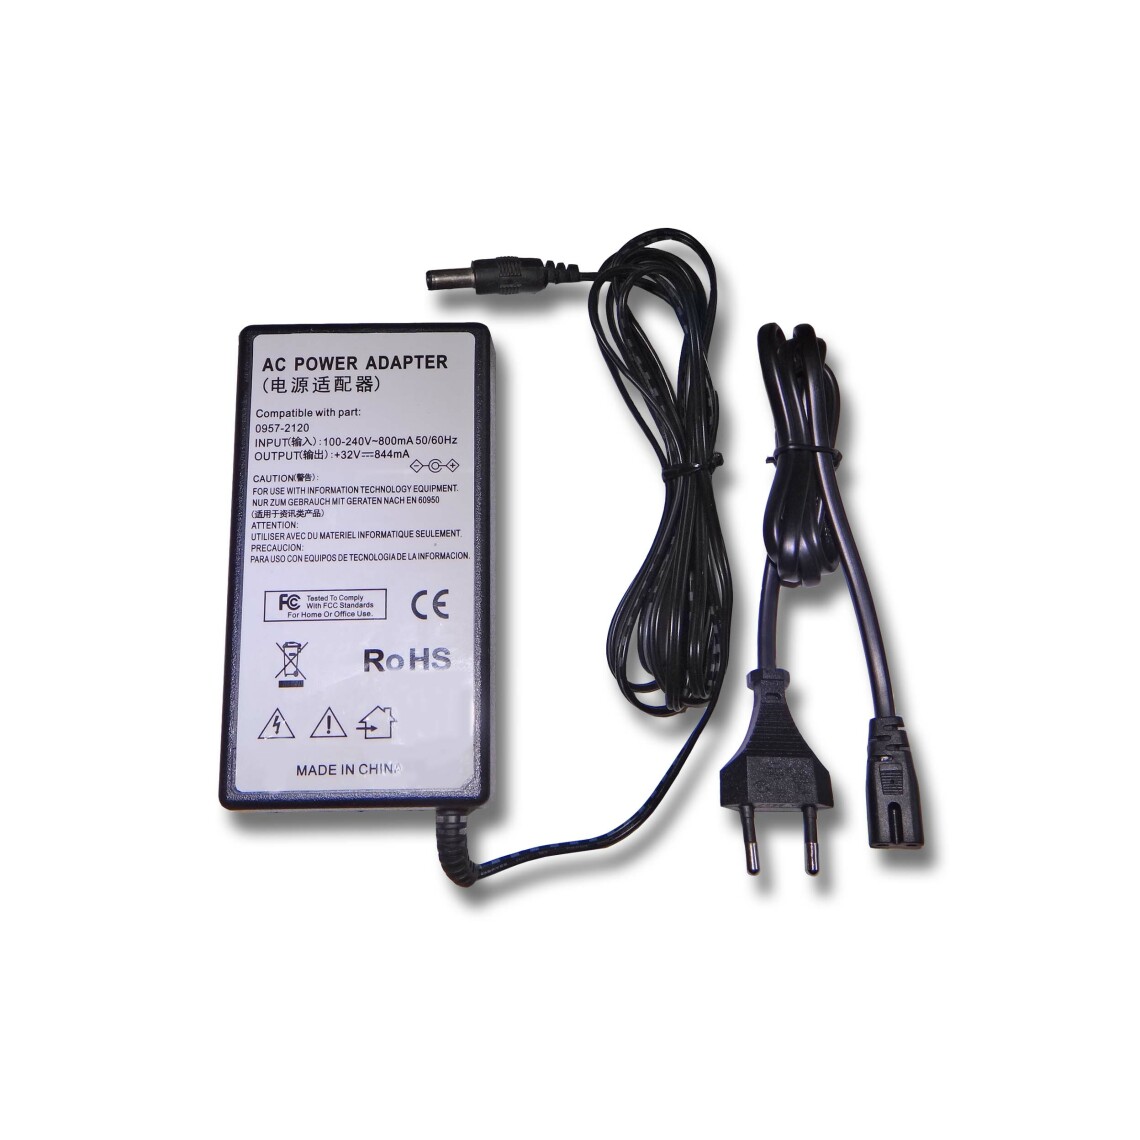 Vhbw - vhbw Imprimante Adaptateur bloc d'alimentation Câble d'alimentation Chargeur compatible avec HP Photosmart A526, A532, A610, A616 imprimante - 0.844A - Accessoires alimentation